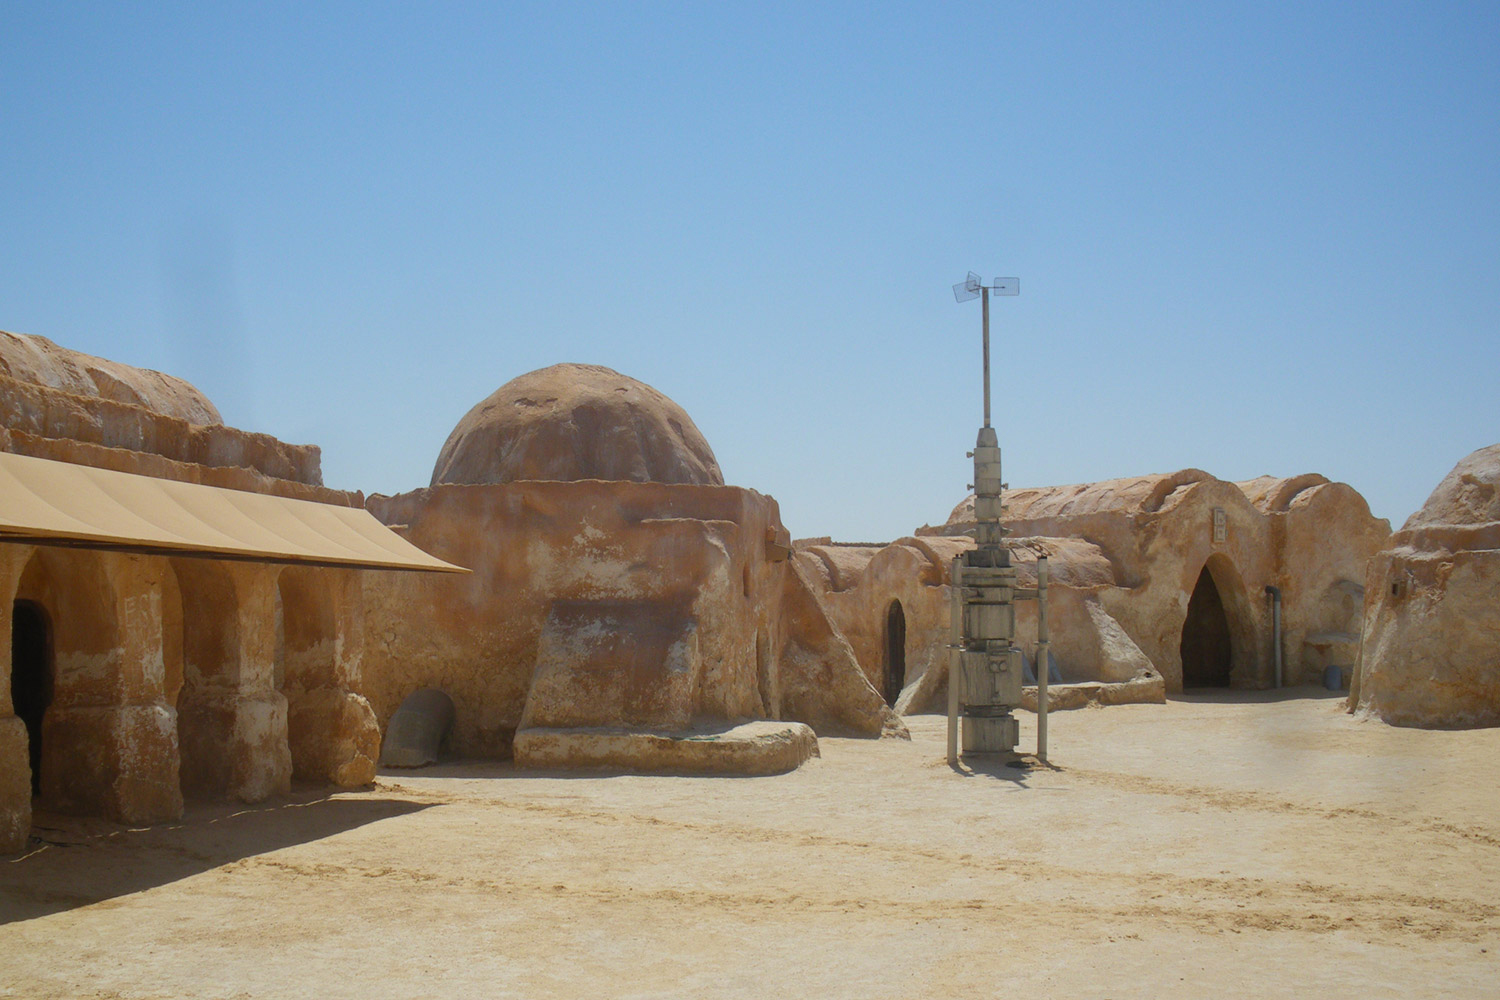 El hogar de Anakin Skywalker en Star Wars, a salvo del Estado islámico